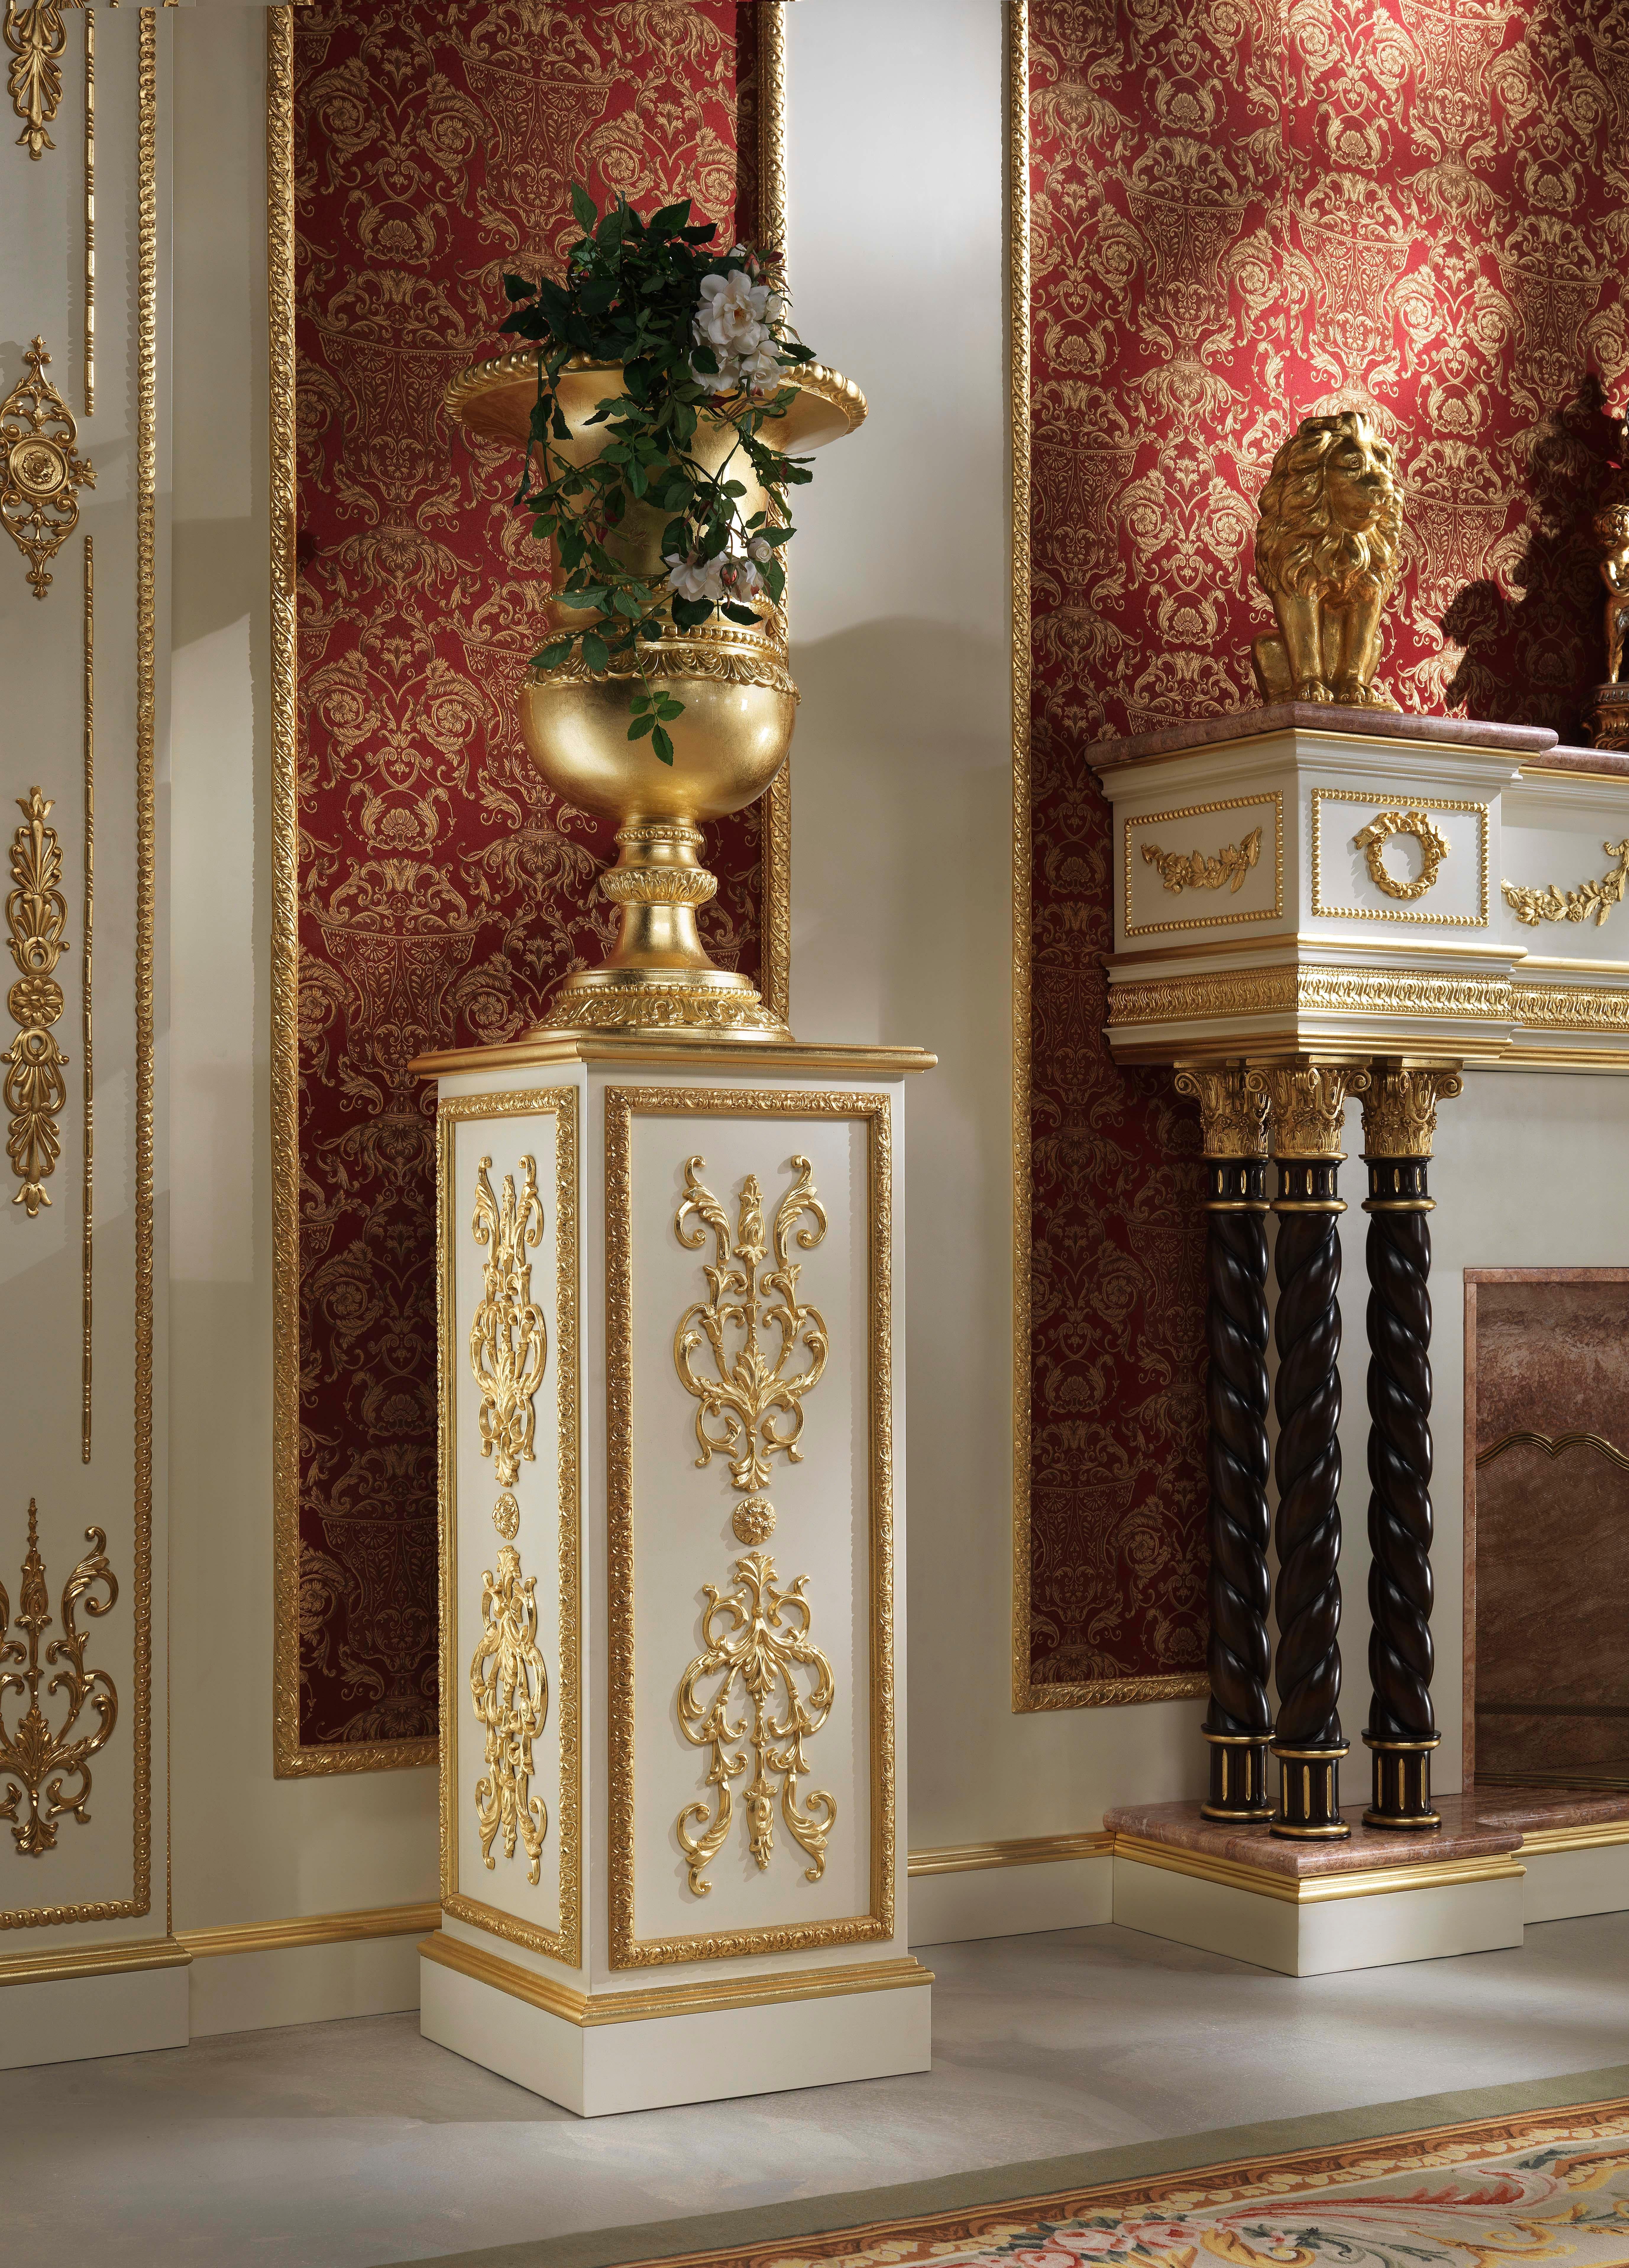 Richten Sie Ihr hochwertiges Penthouse mit klassischer Dekoration Made in Italy ein. Modenese Interiors freut sich, Ihnen diese wundervoll geschnitzte klassische Holzvase vorzustellen, die komplett von Hand mit Blattgold verziert ist. Die